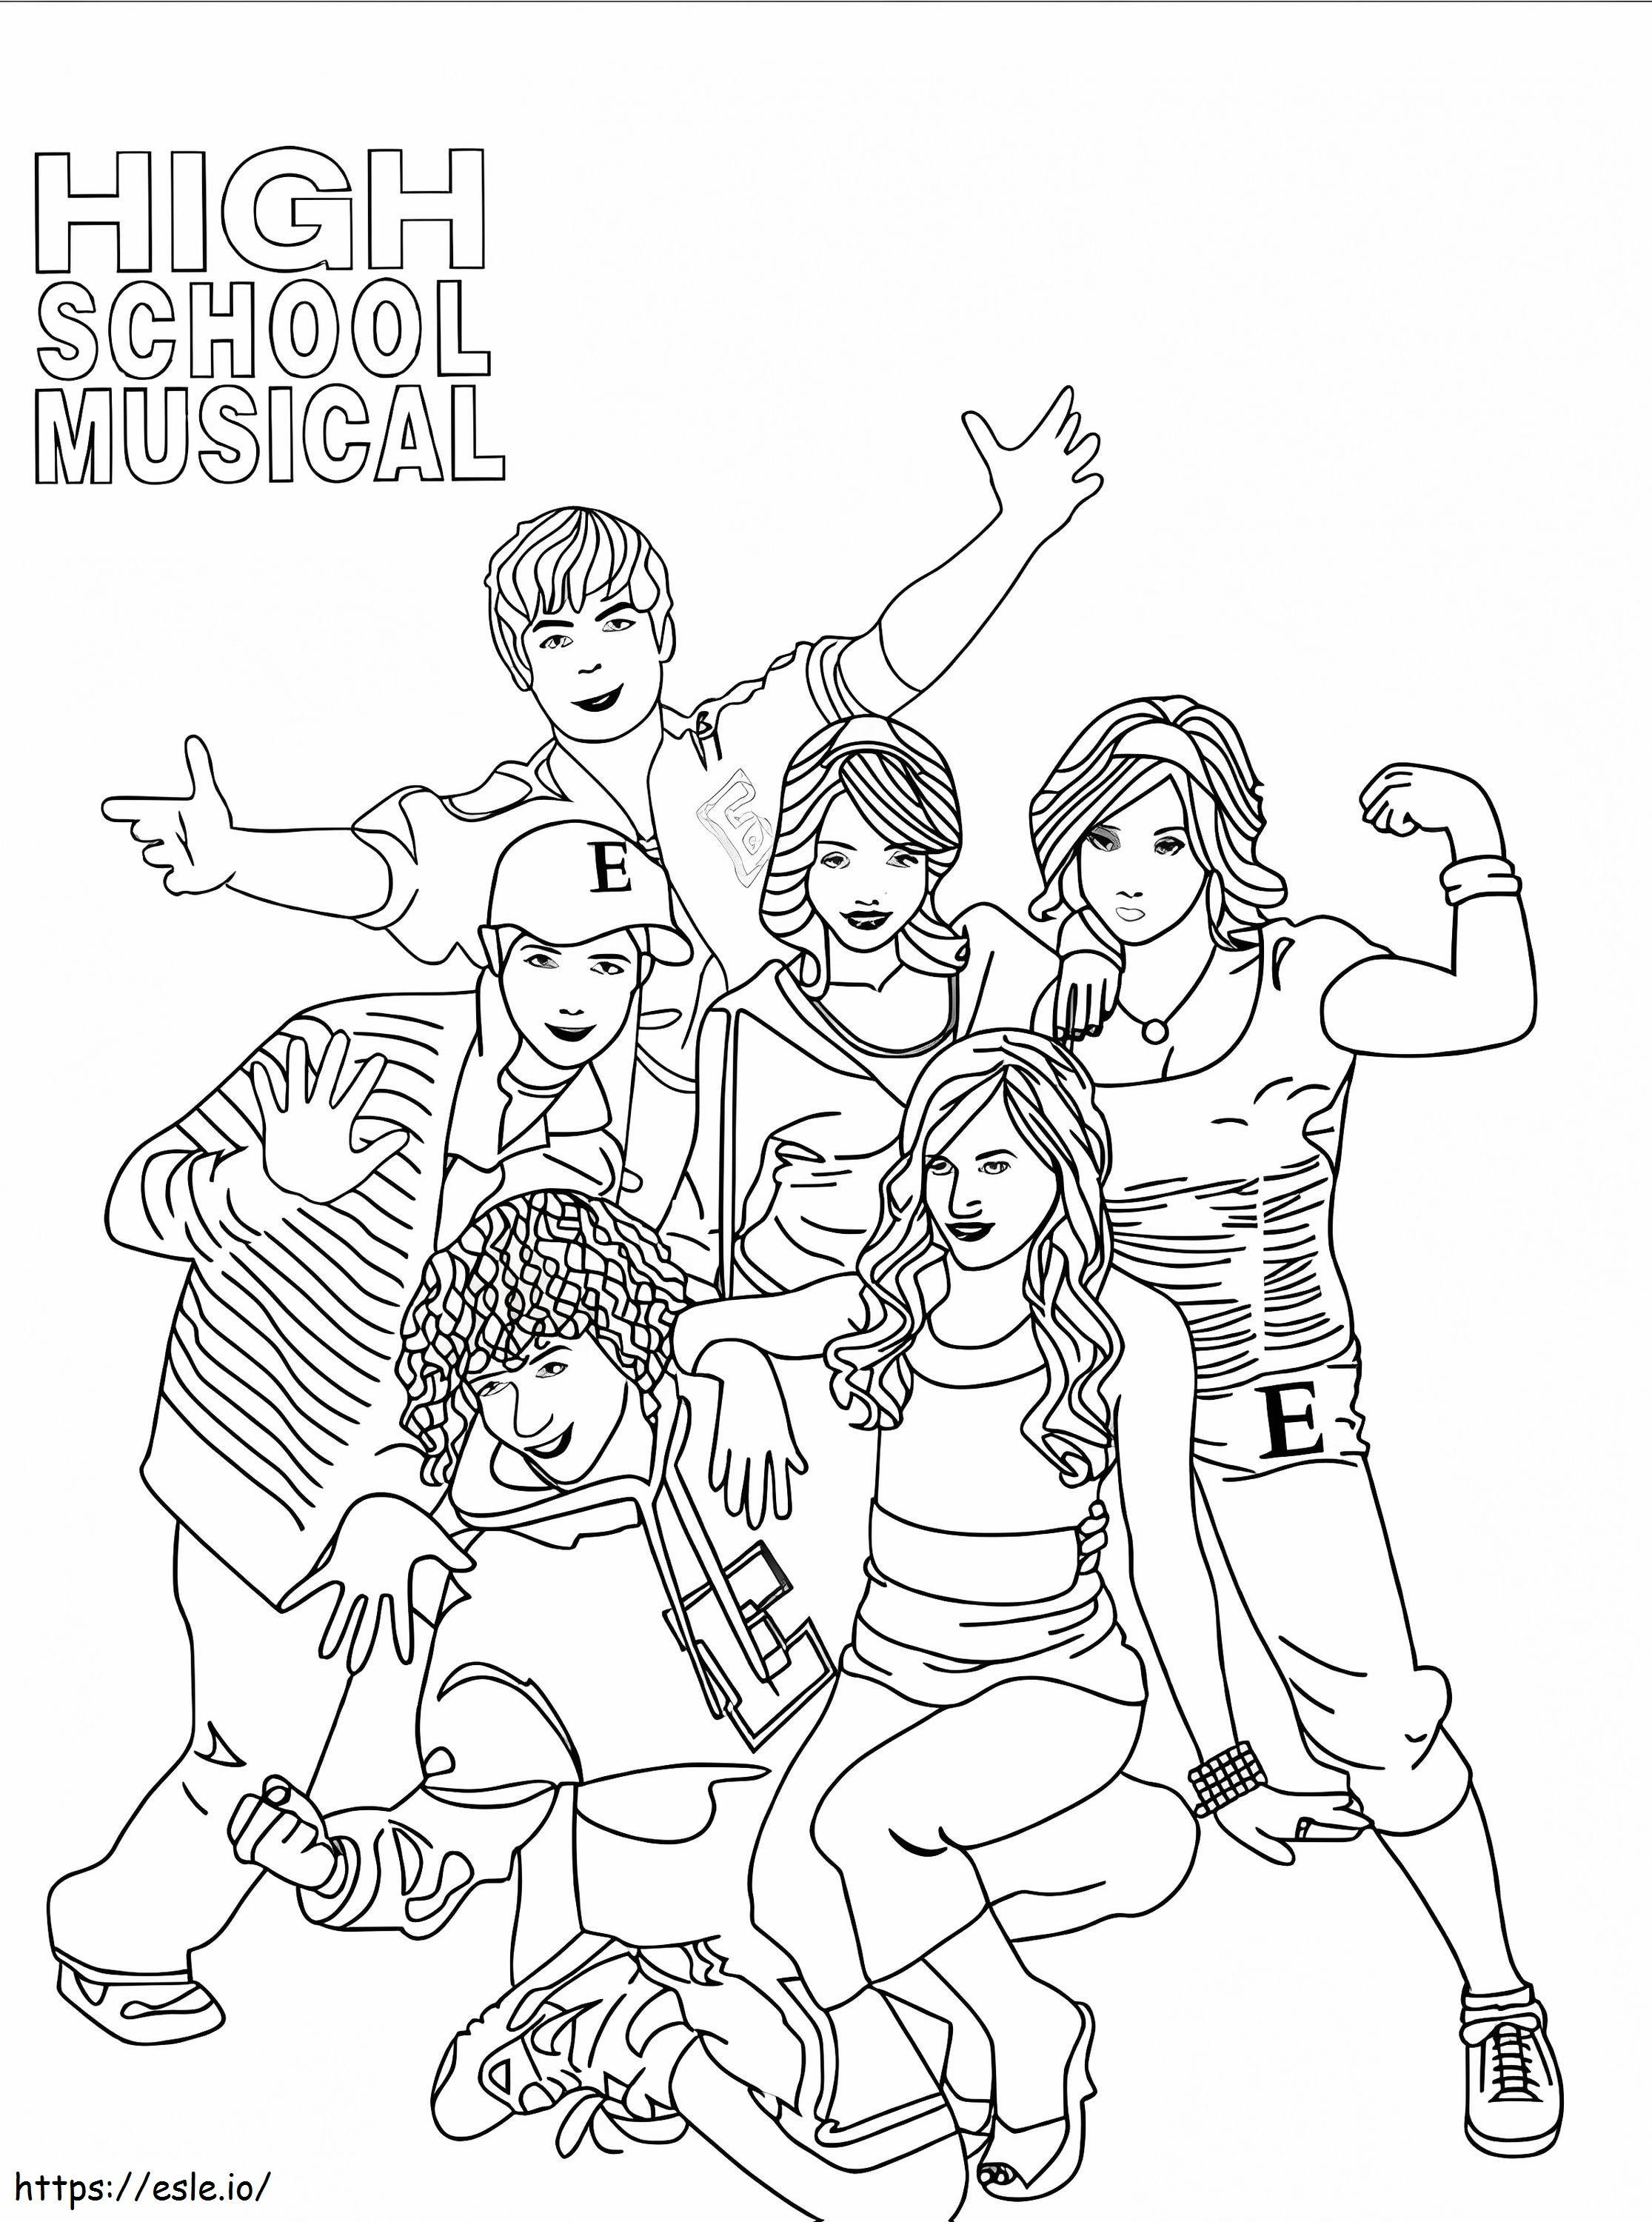 Personages uit de middelbare schoolmusical kleurplaat kleurplaat